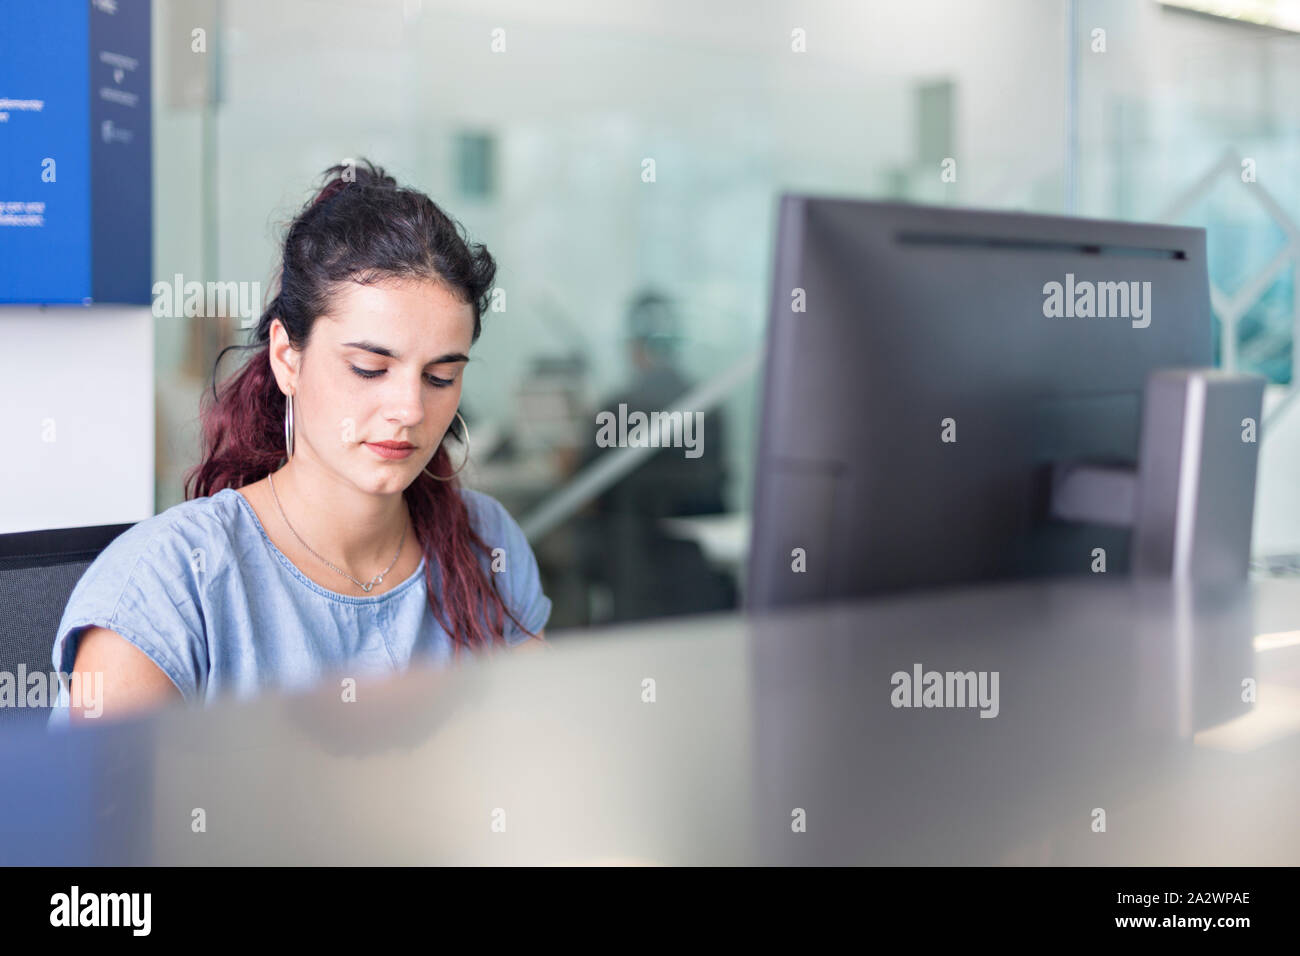 Junge Frau gerade Nachrichten auf dem Bildschirm in einem Coworking Space. Moderne Einrichtung mit Glas Divisionen für freiberufliche Mitarbeiter. Stockfoto